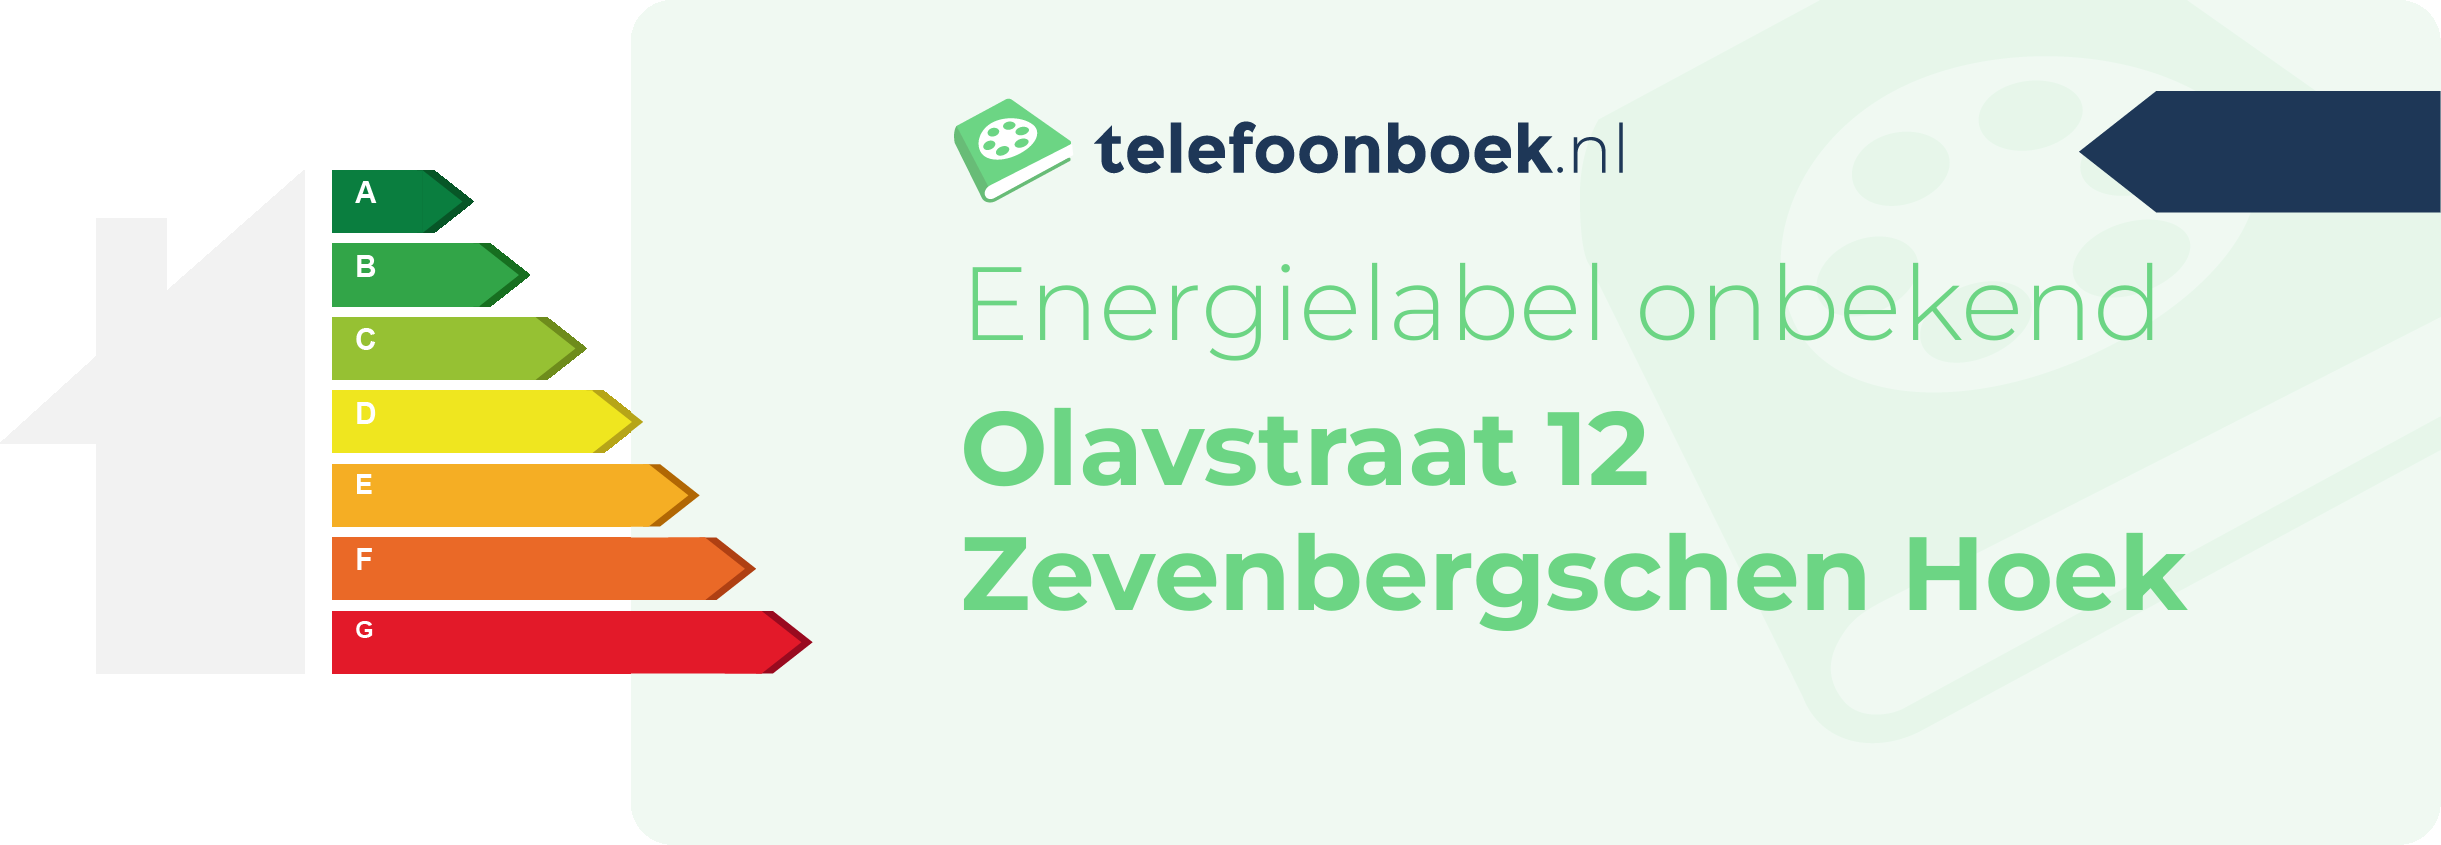 Energielabel Olavstraat 12 Zevenbergschen Hoek